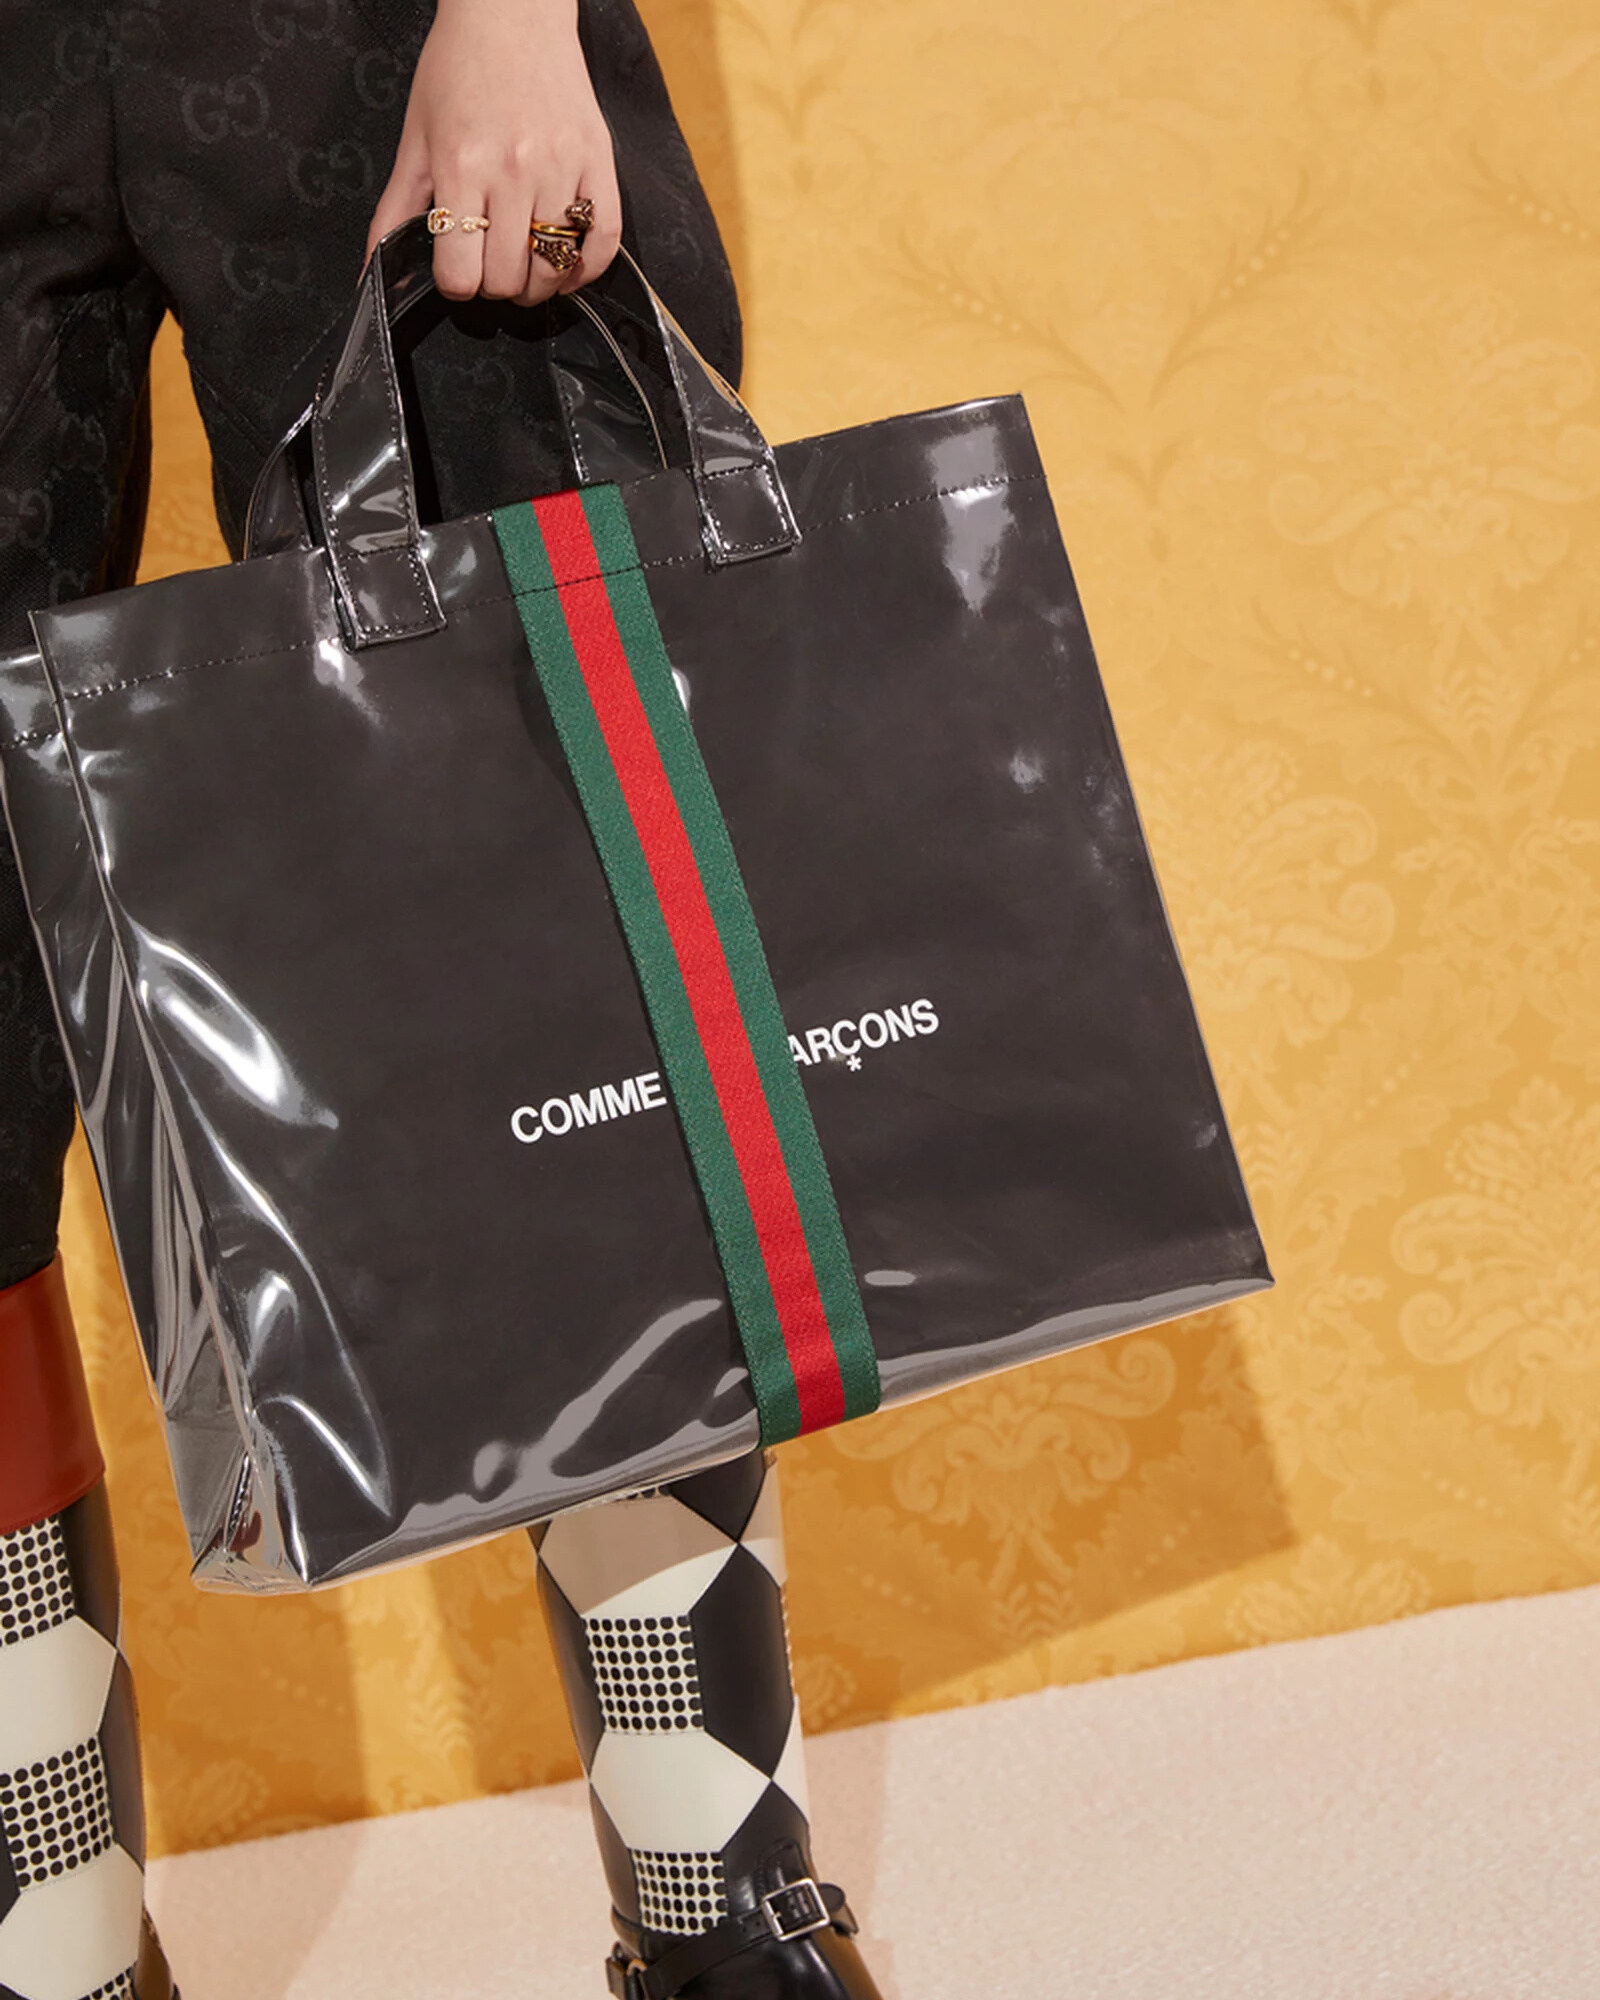 Gucci x Comme Des Garcons Tote Bag 2021